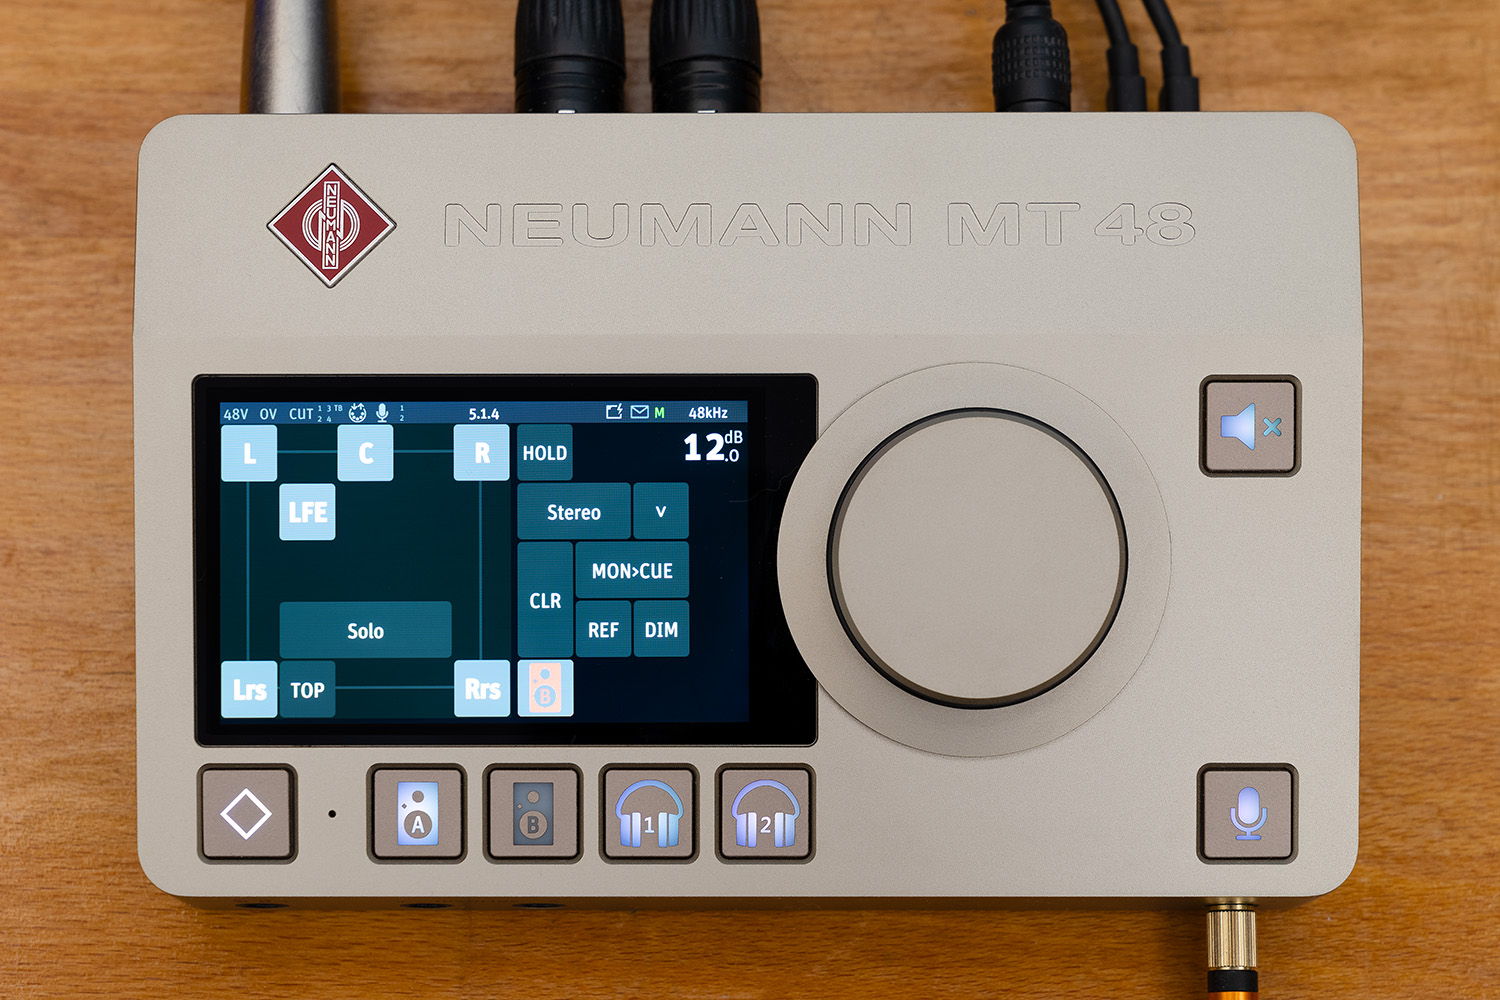 De Neumann MT 48 audio-interface krijgt een functionele update, die het mogelijk maakt om in immersieve audioformaten te werkeng